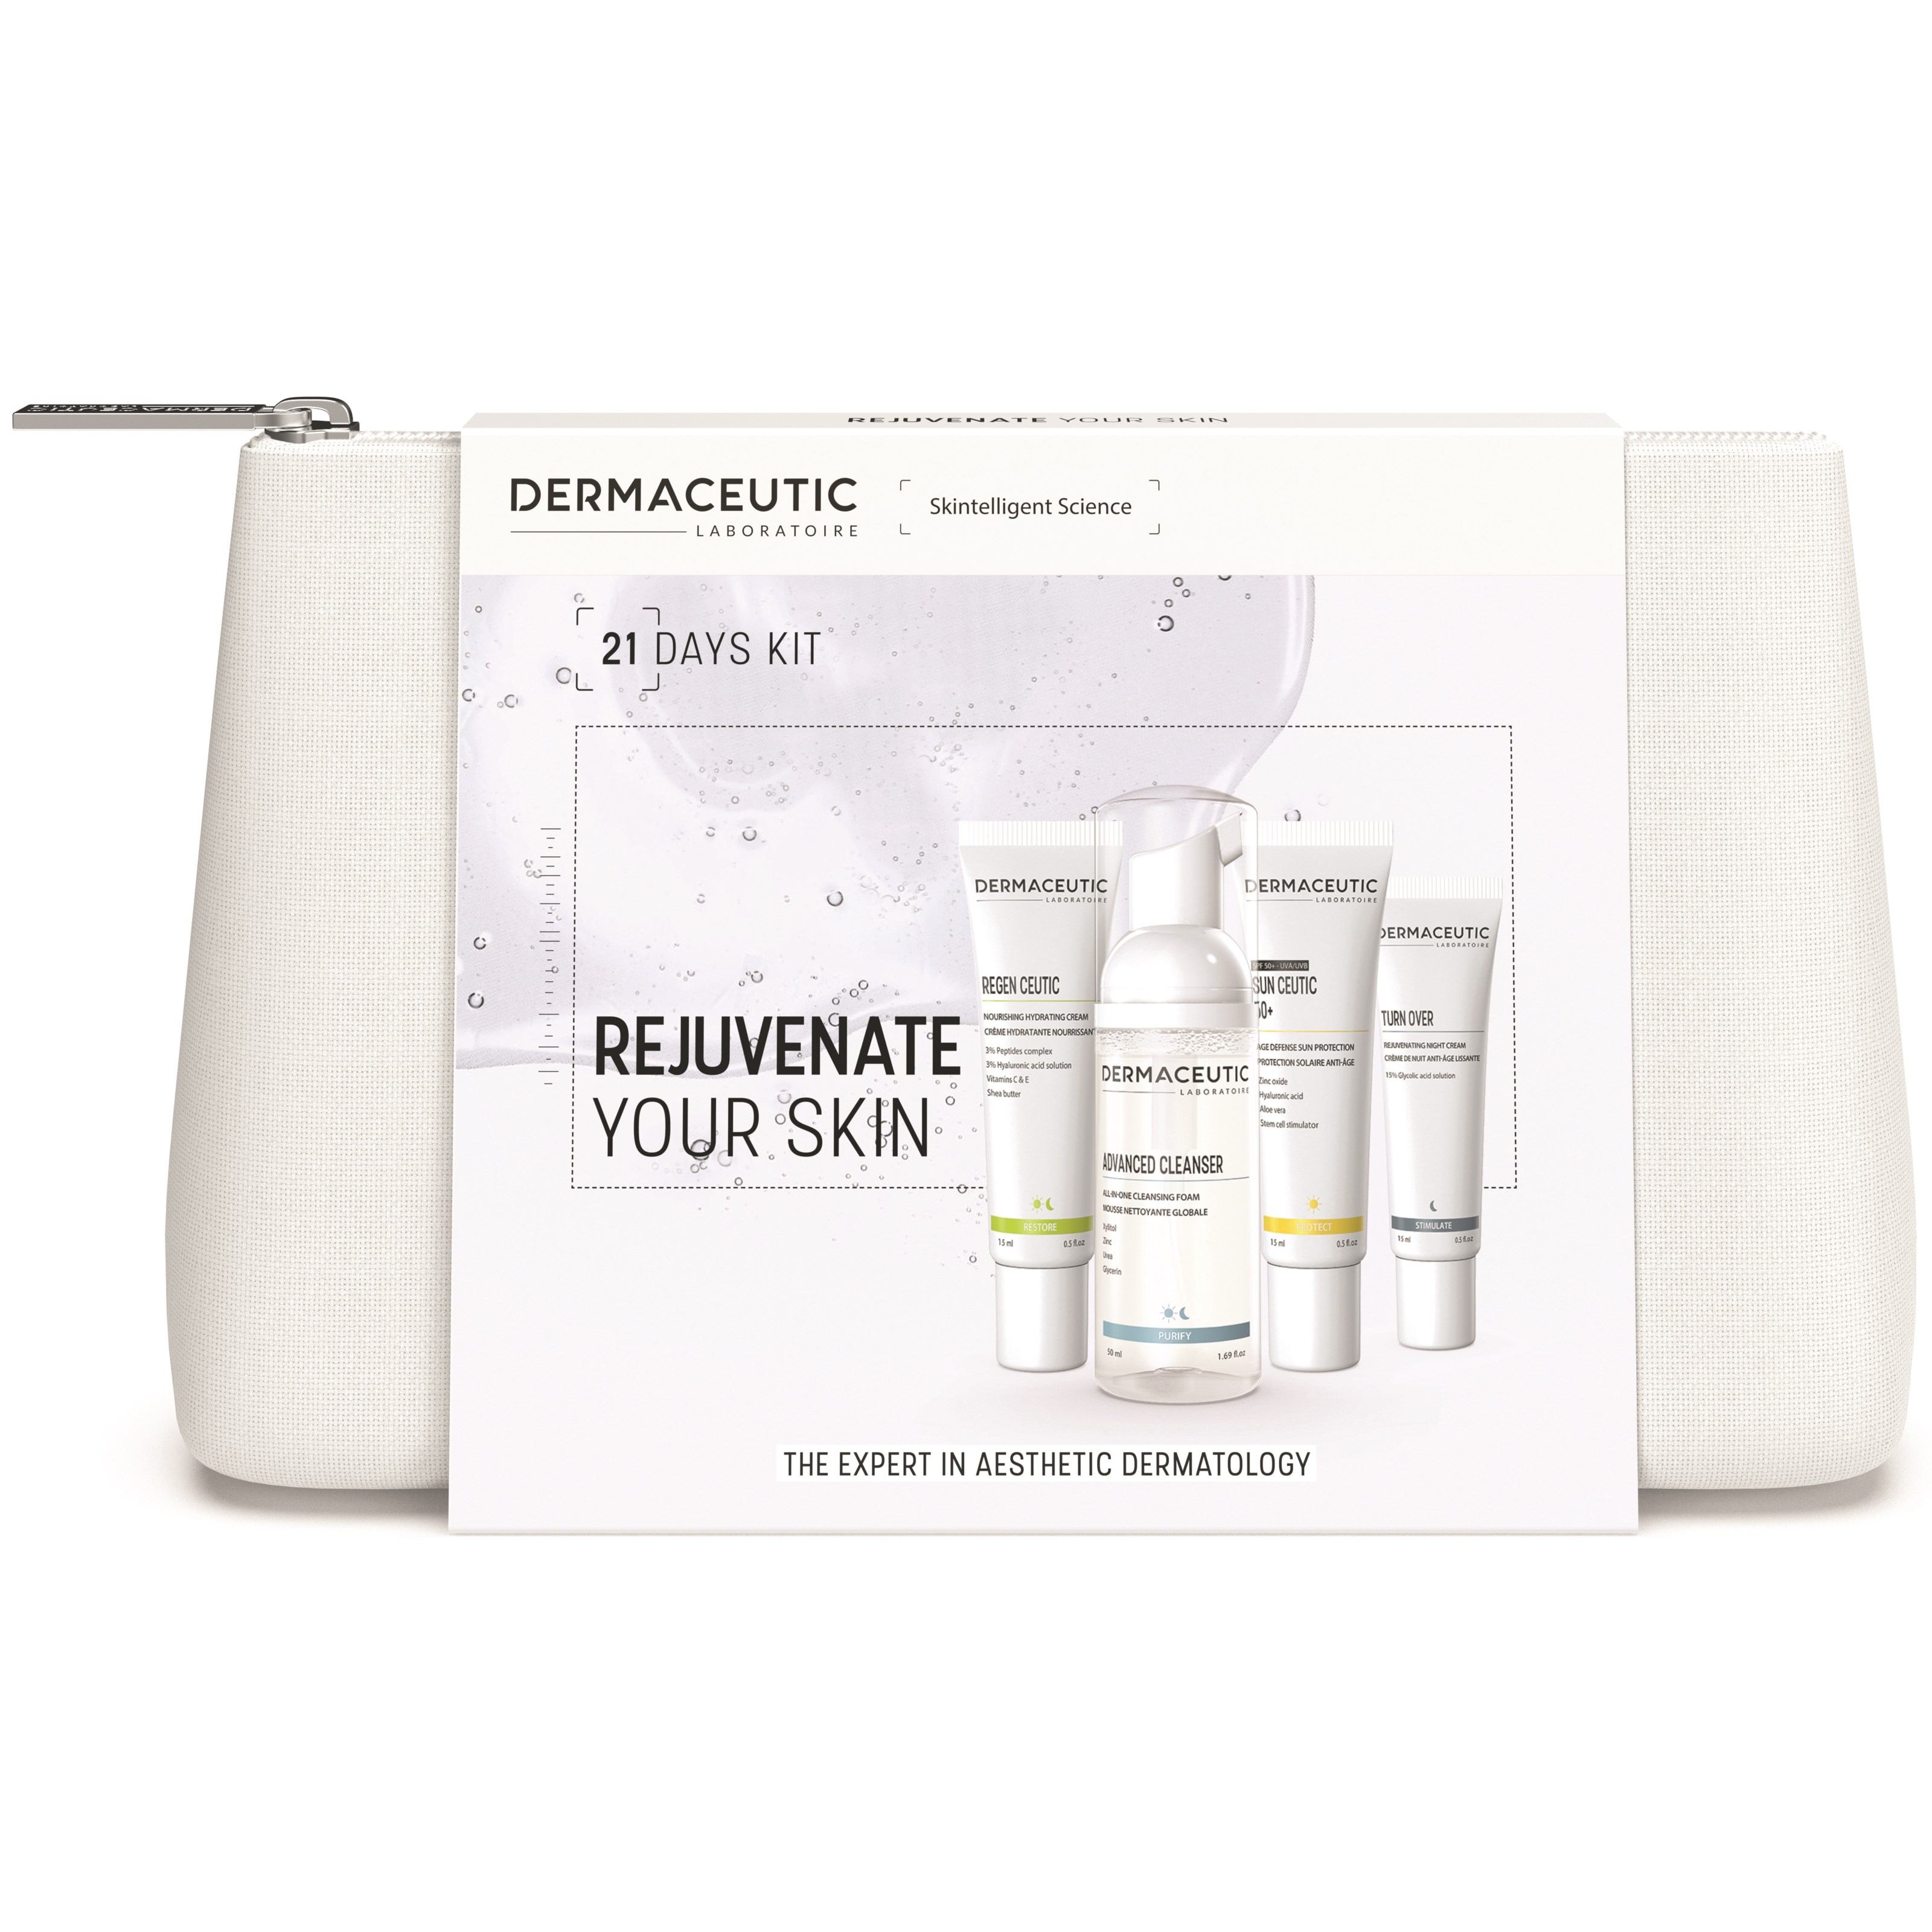 Bilde av Dermaceutic 21 Days Kit Rejuvenate Your Skin